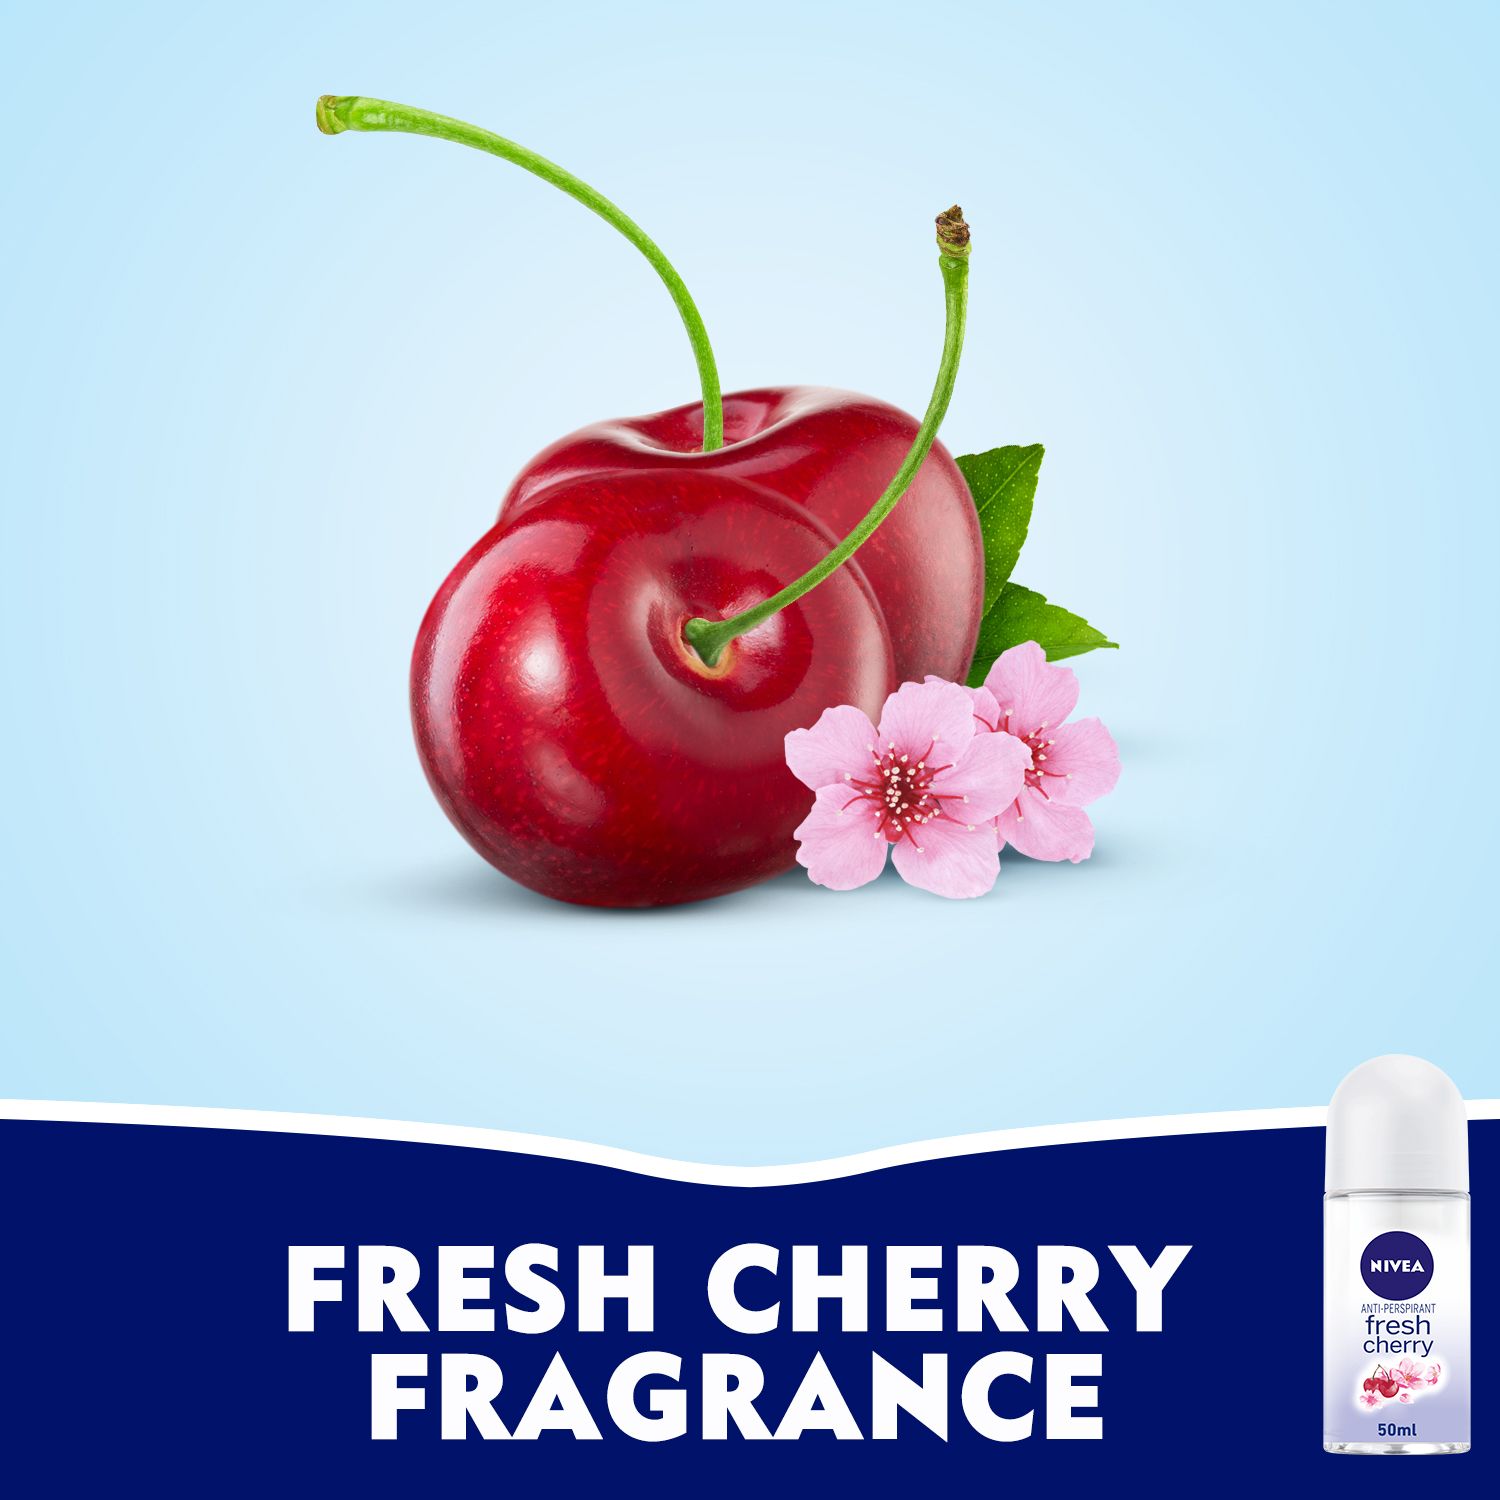 Antiperspirant Roll-on for Women, Fresh Cherry Scent, 50ml